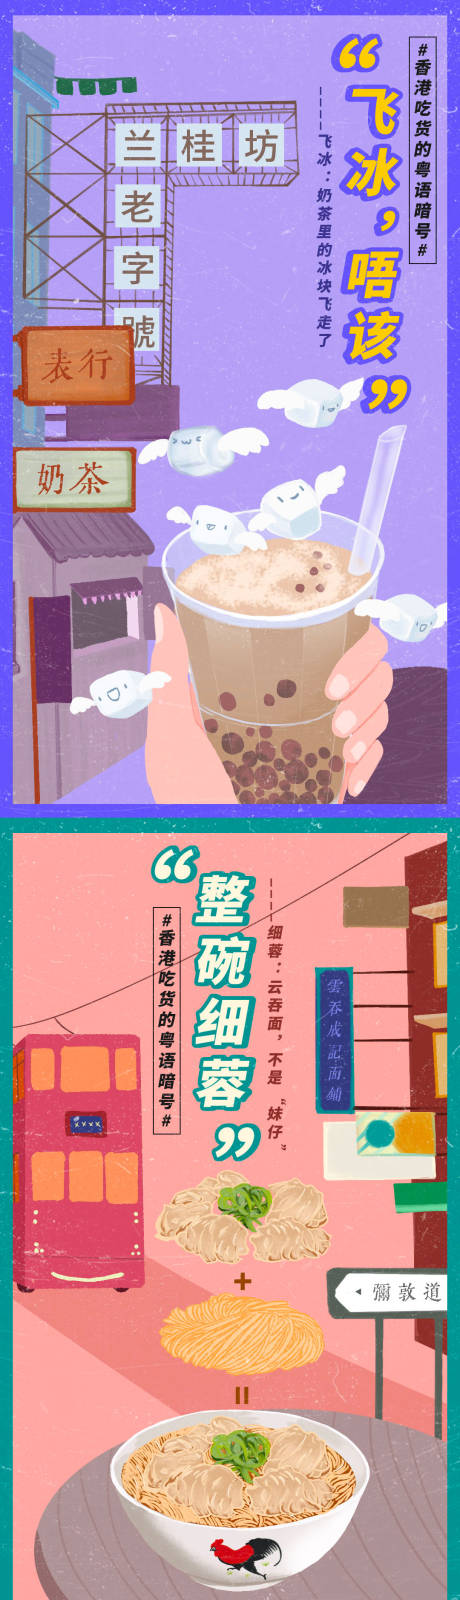 香港美食方言特色复古海报